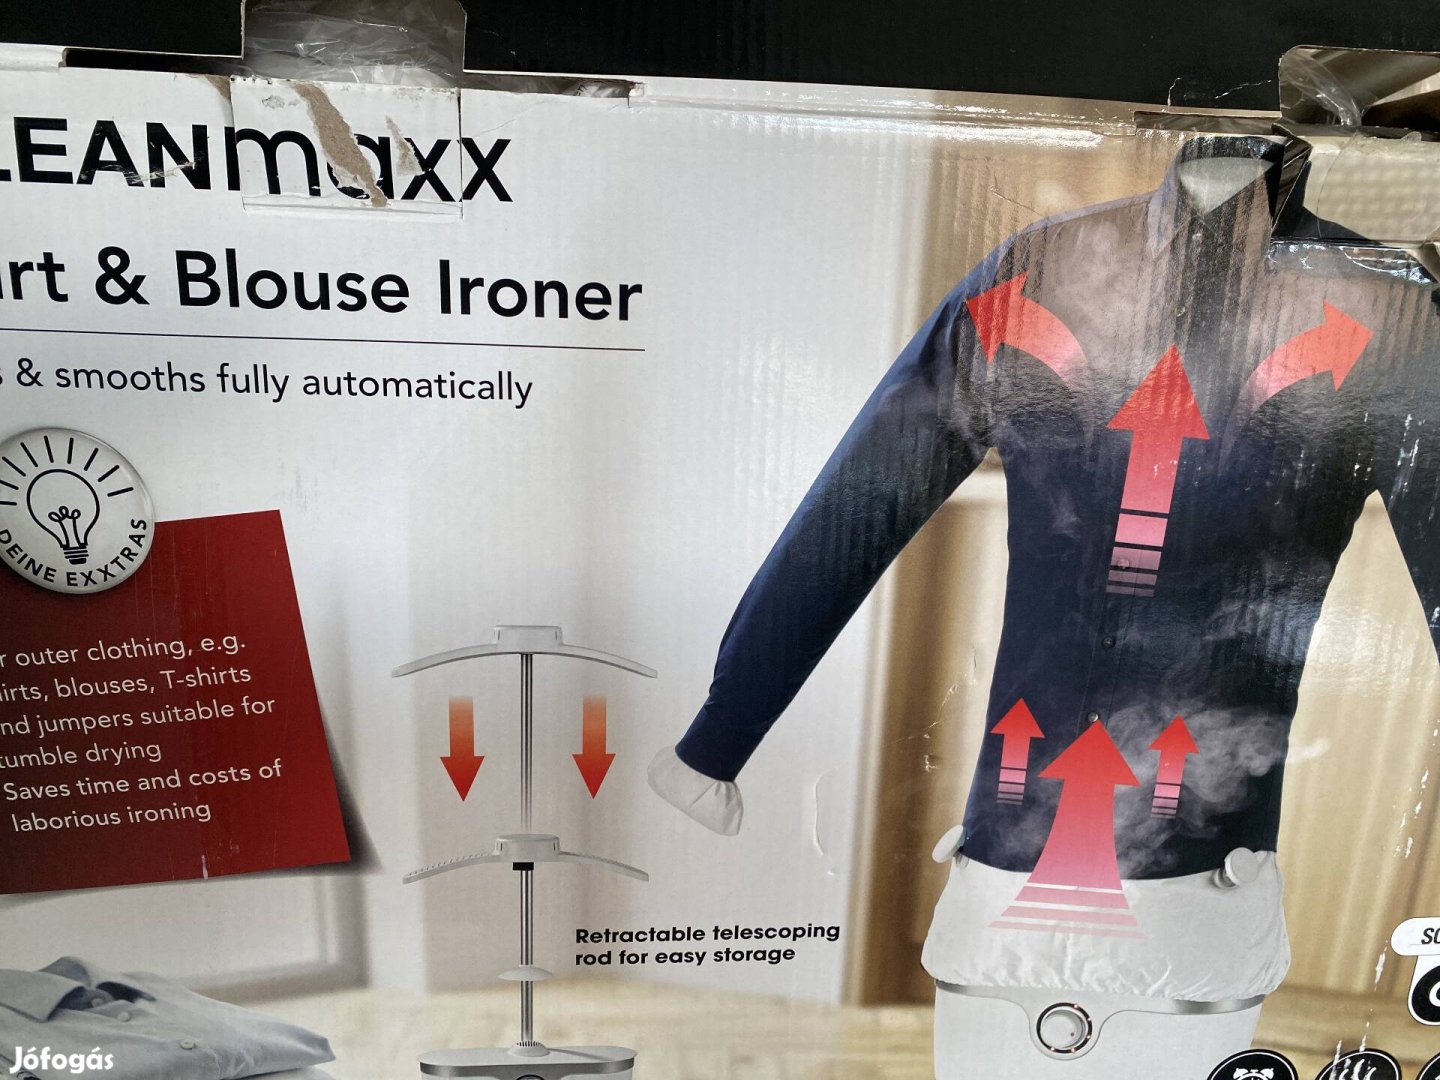 Új Cleanmaxx ing és blúzvasaló gép